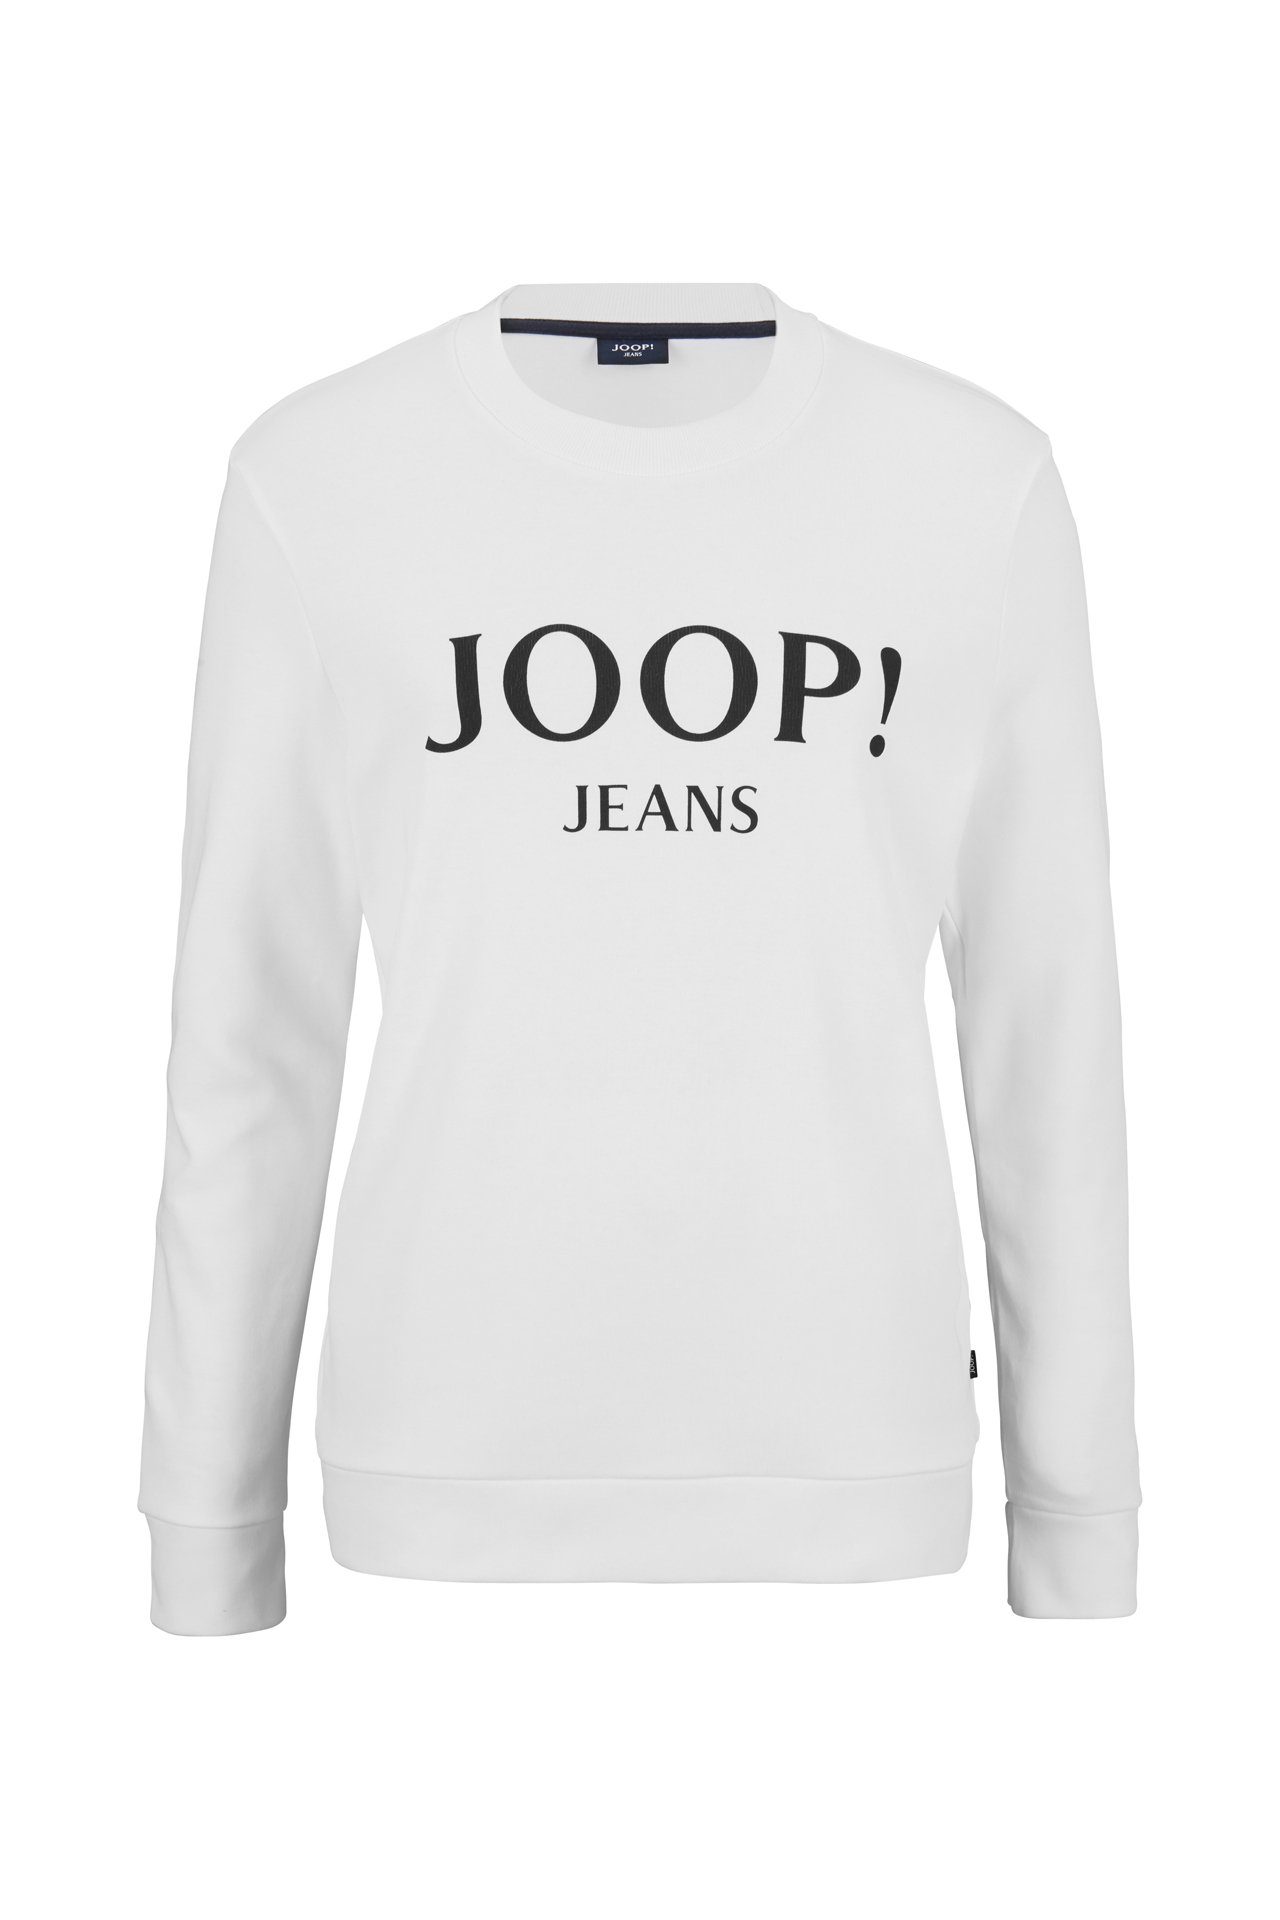 Joop Jeans Sweatshirt